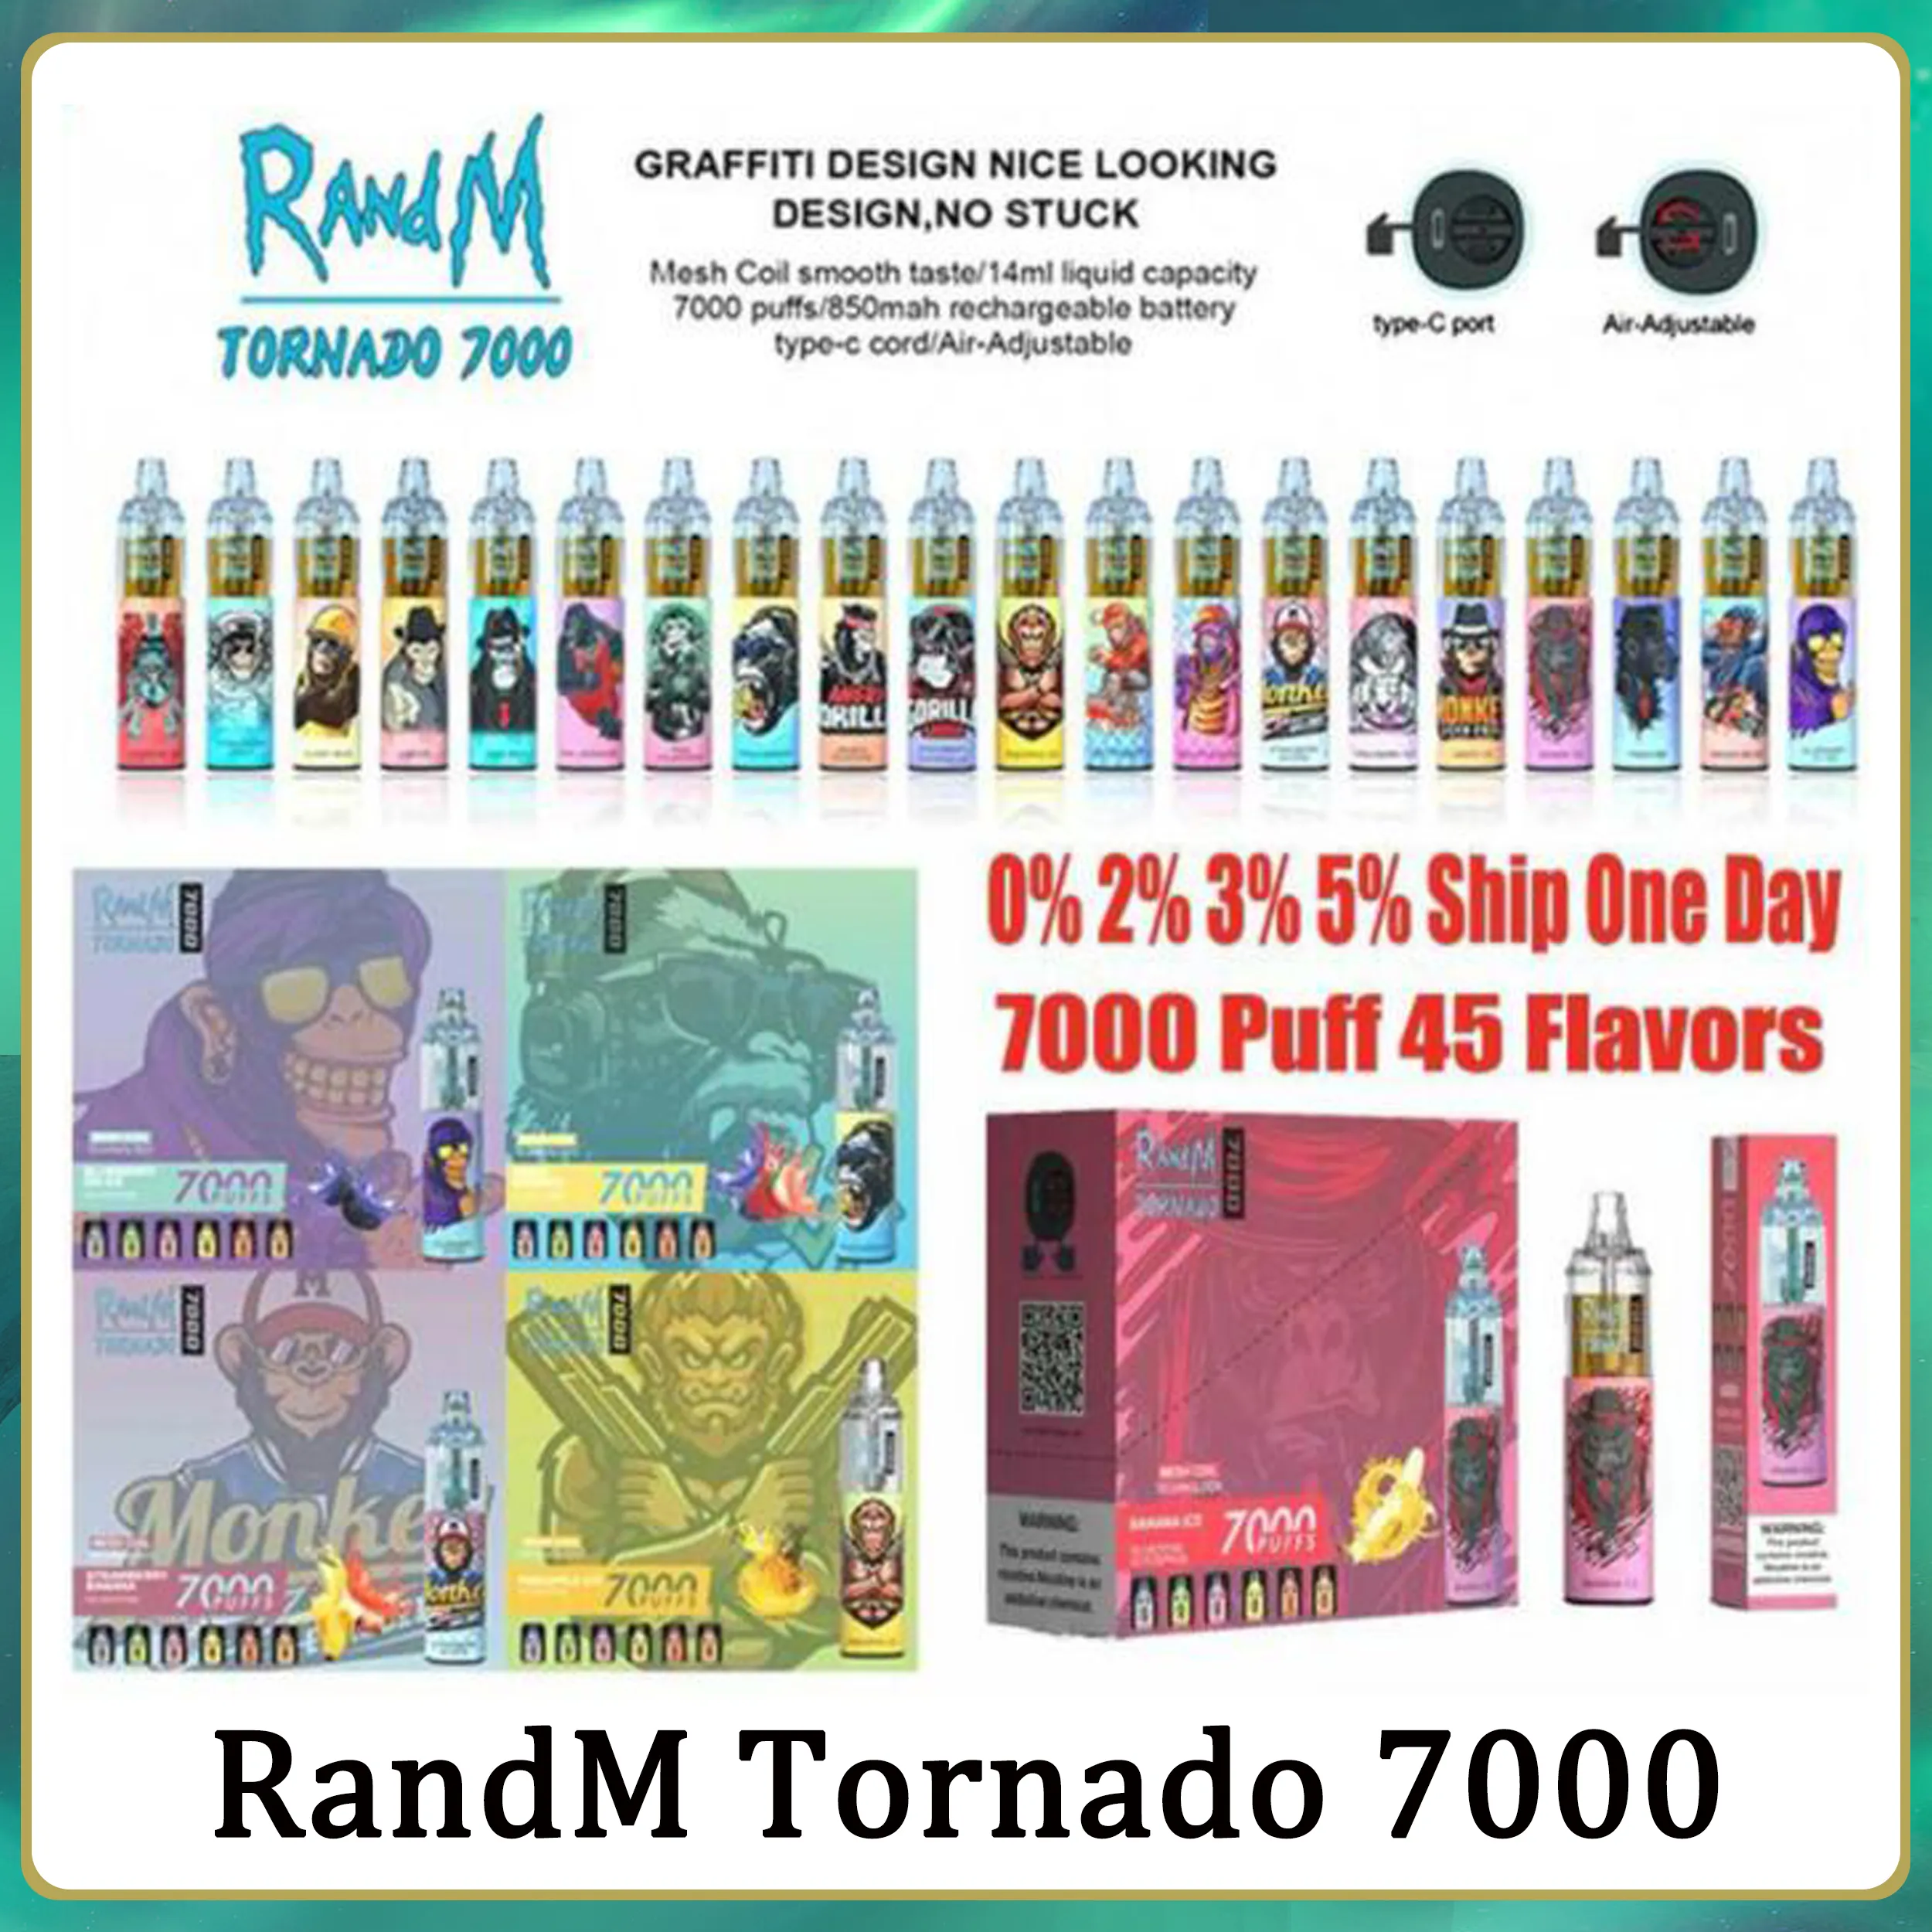 Oryginalne Randm Tornado 7000 Puffs 7k Dostępowe Vape Pen Elektroniczne papierosy 14 ml Podejdź Cewka 6 Świecające kolory doładowalne doładowalne 2% 5% Urządzenie 50 Smaki 50 Smaki